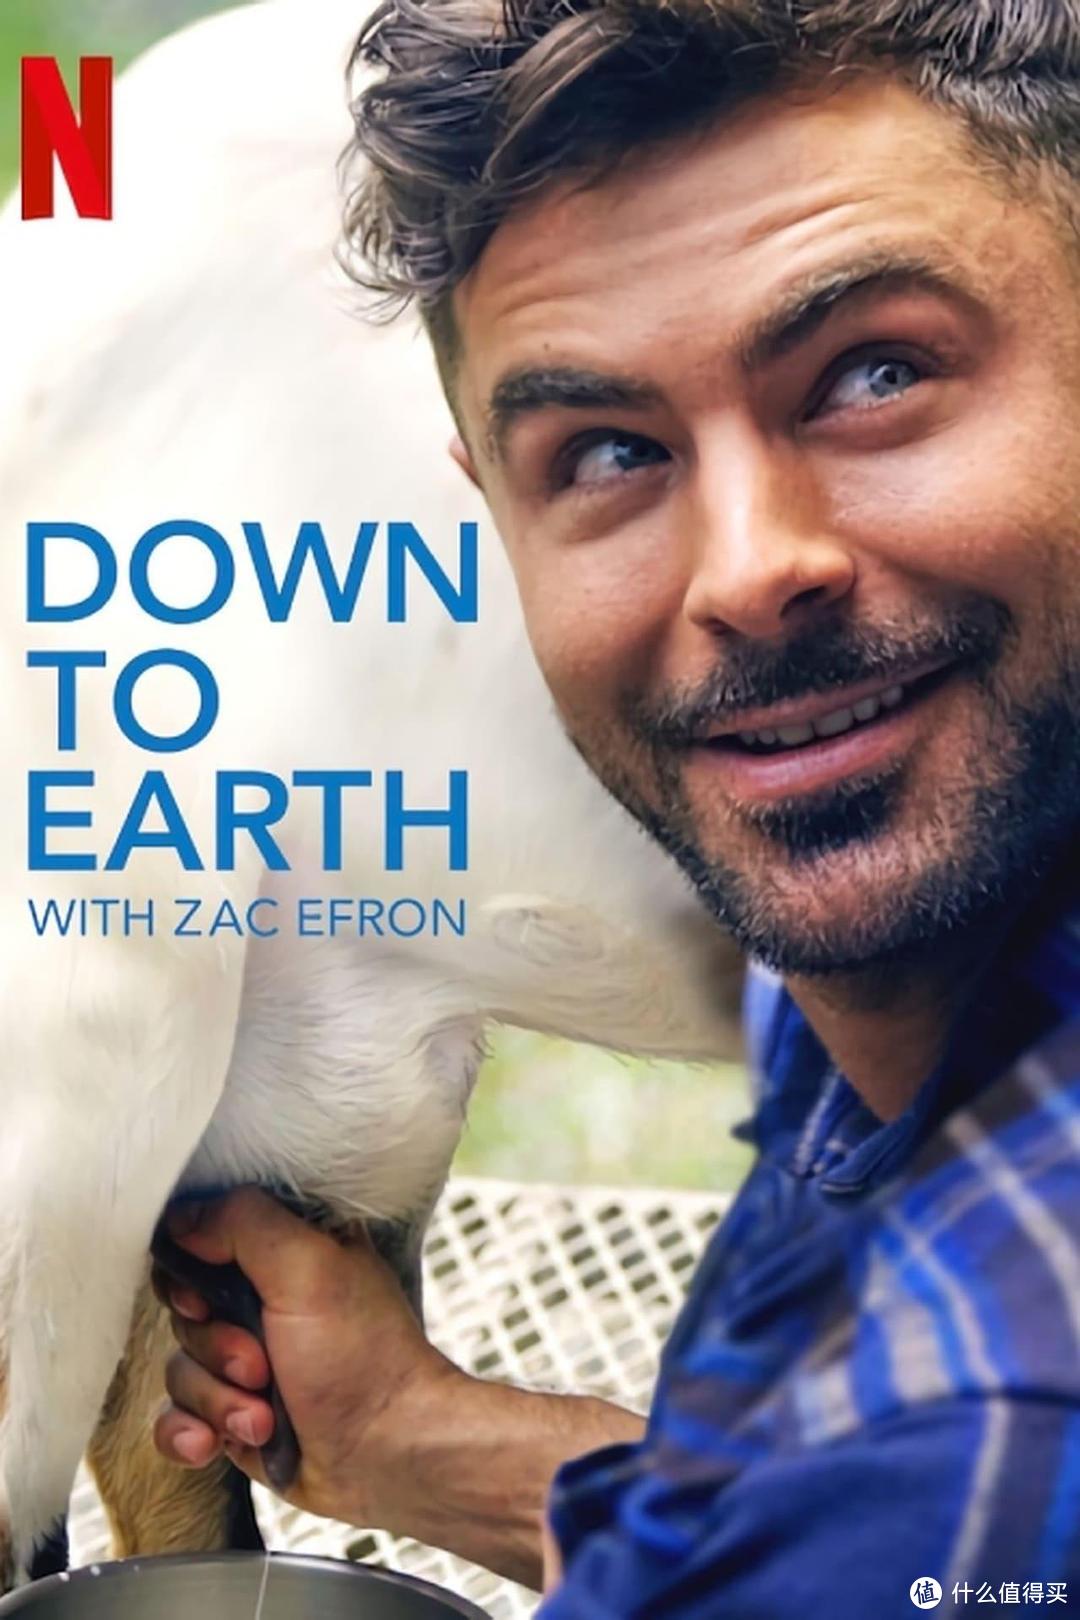 扎克·埃夫隆主持的Netflix旅游节目《与扎克·埃夫隆环游地球》(Down to Earth with Zac Efron，暂译)首曝剧照！扎克将与健康专家Darin Olien开启环球之旅，寻找健康、可持续的生活方式。该节目将于7月10日登陆Netflix。